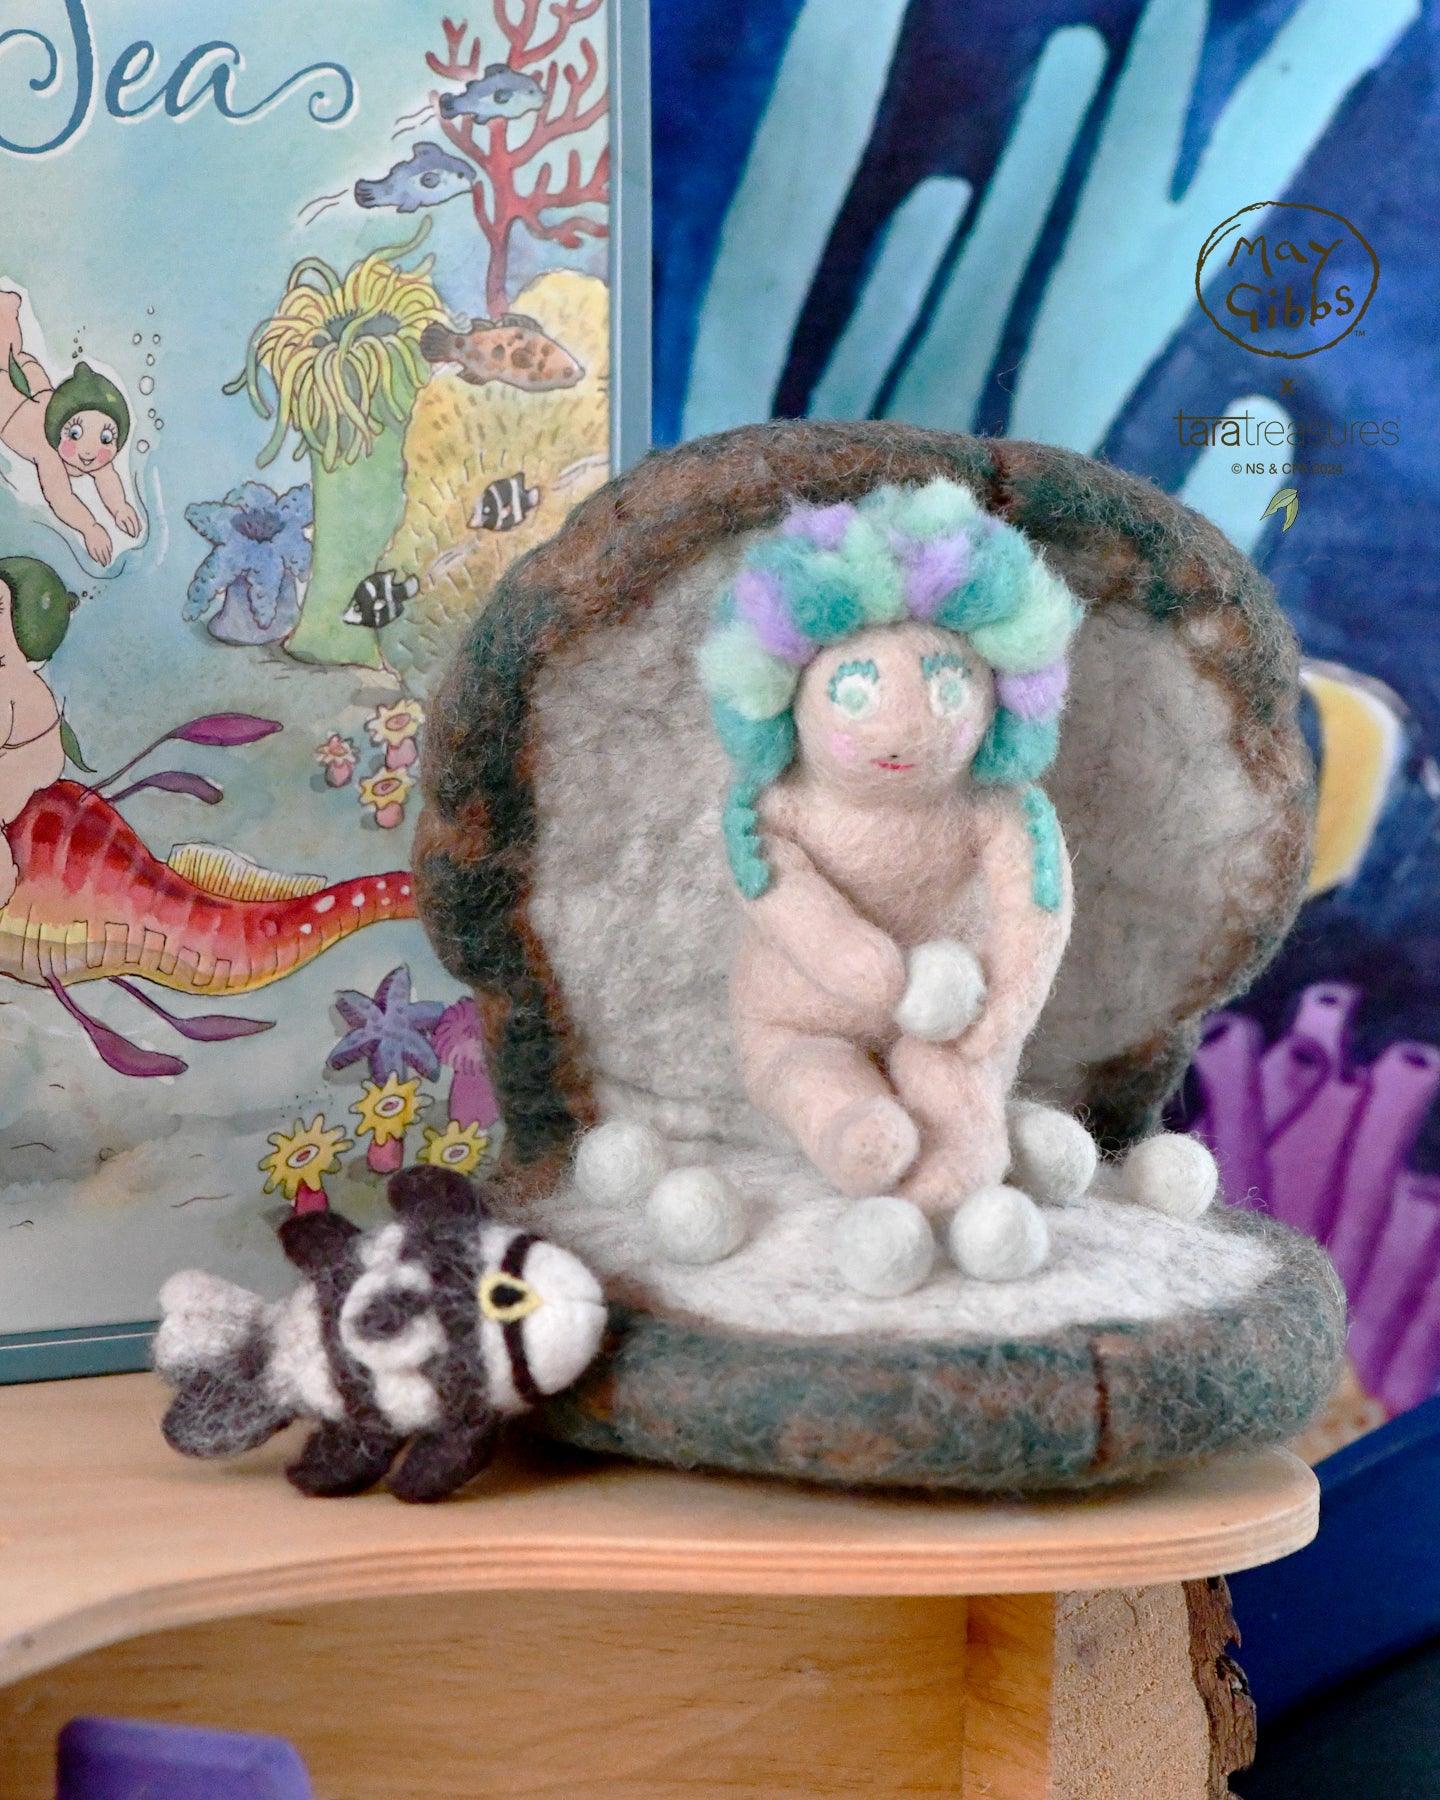 May Gibbs x Tara Treasures - Little Obelia, Clam Shell and Fish Toy - Tara Treasures